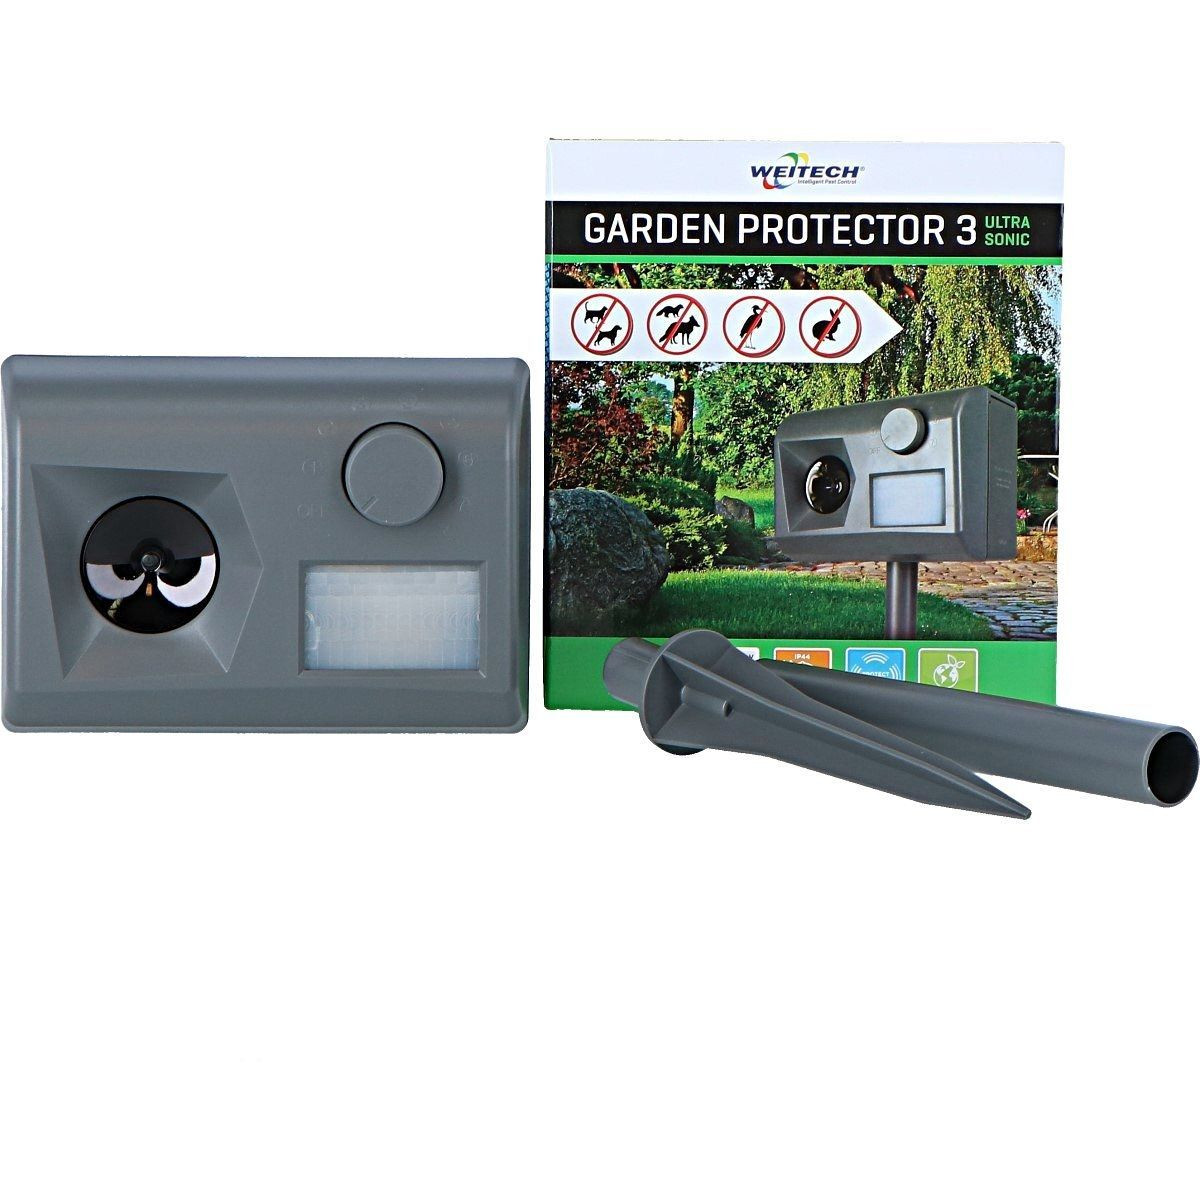 Weitech Gardenprotector 3 WK0055 inhoud verpakking